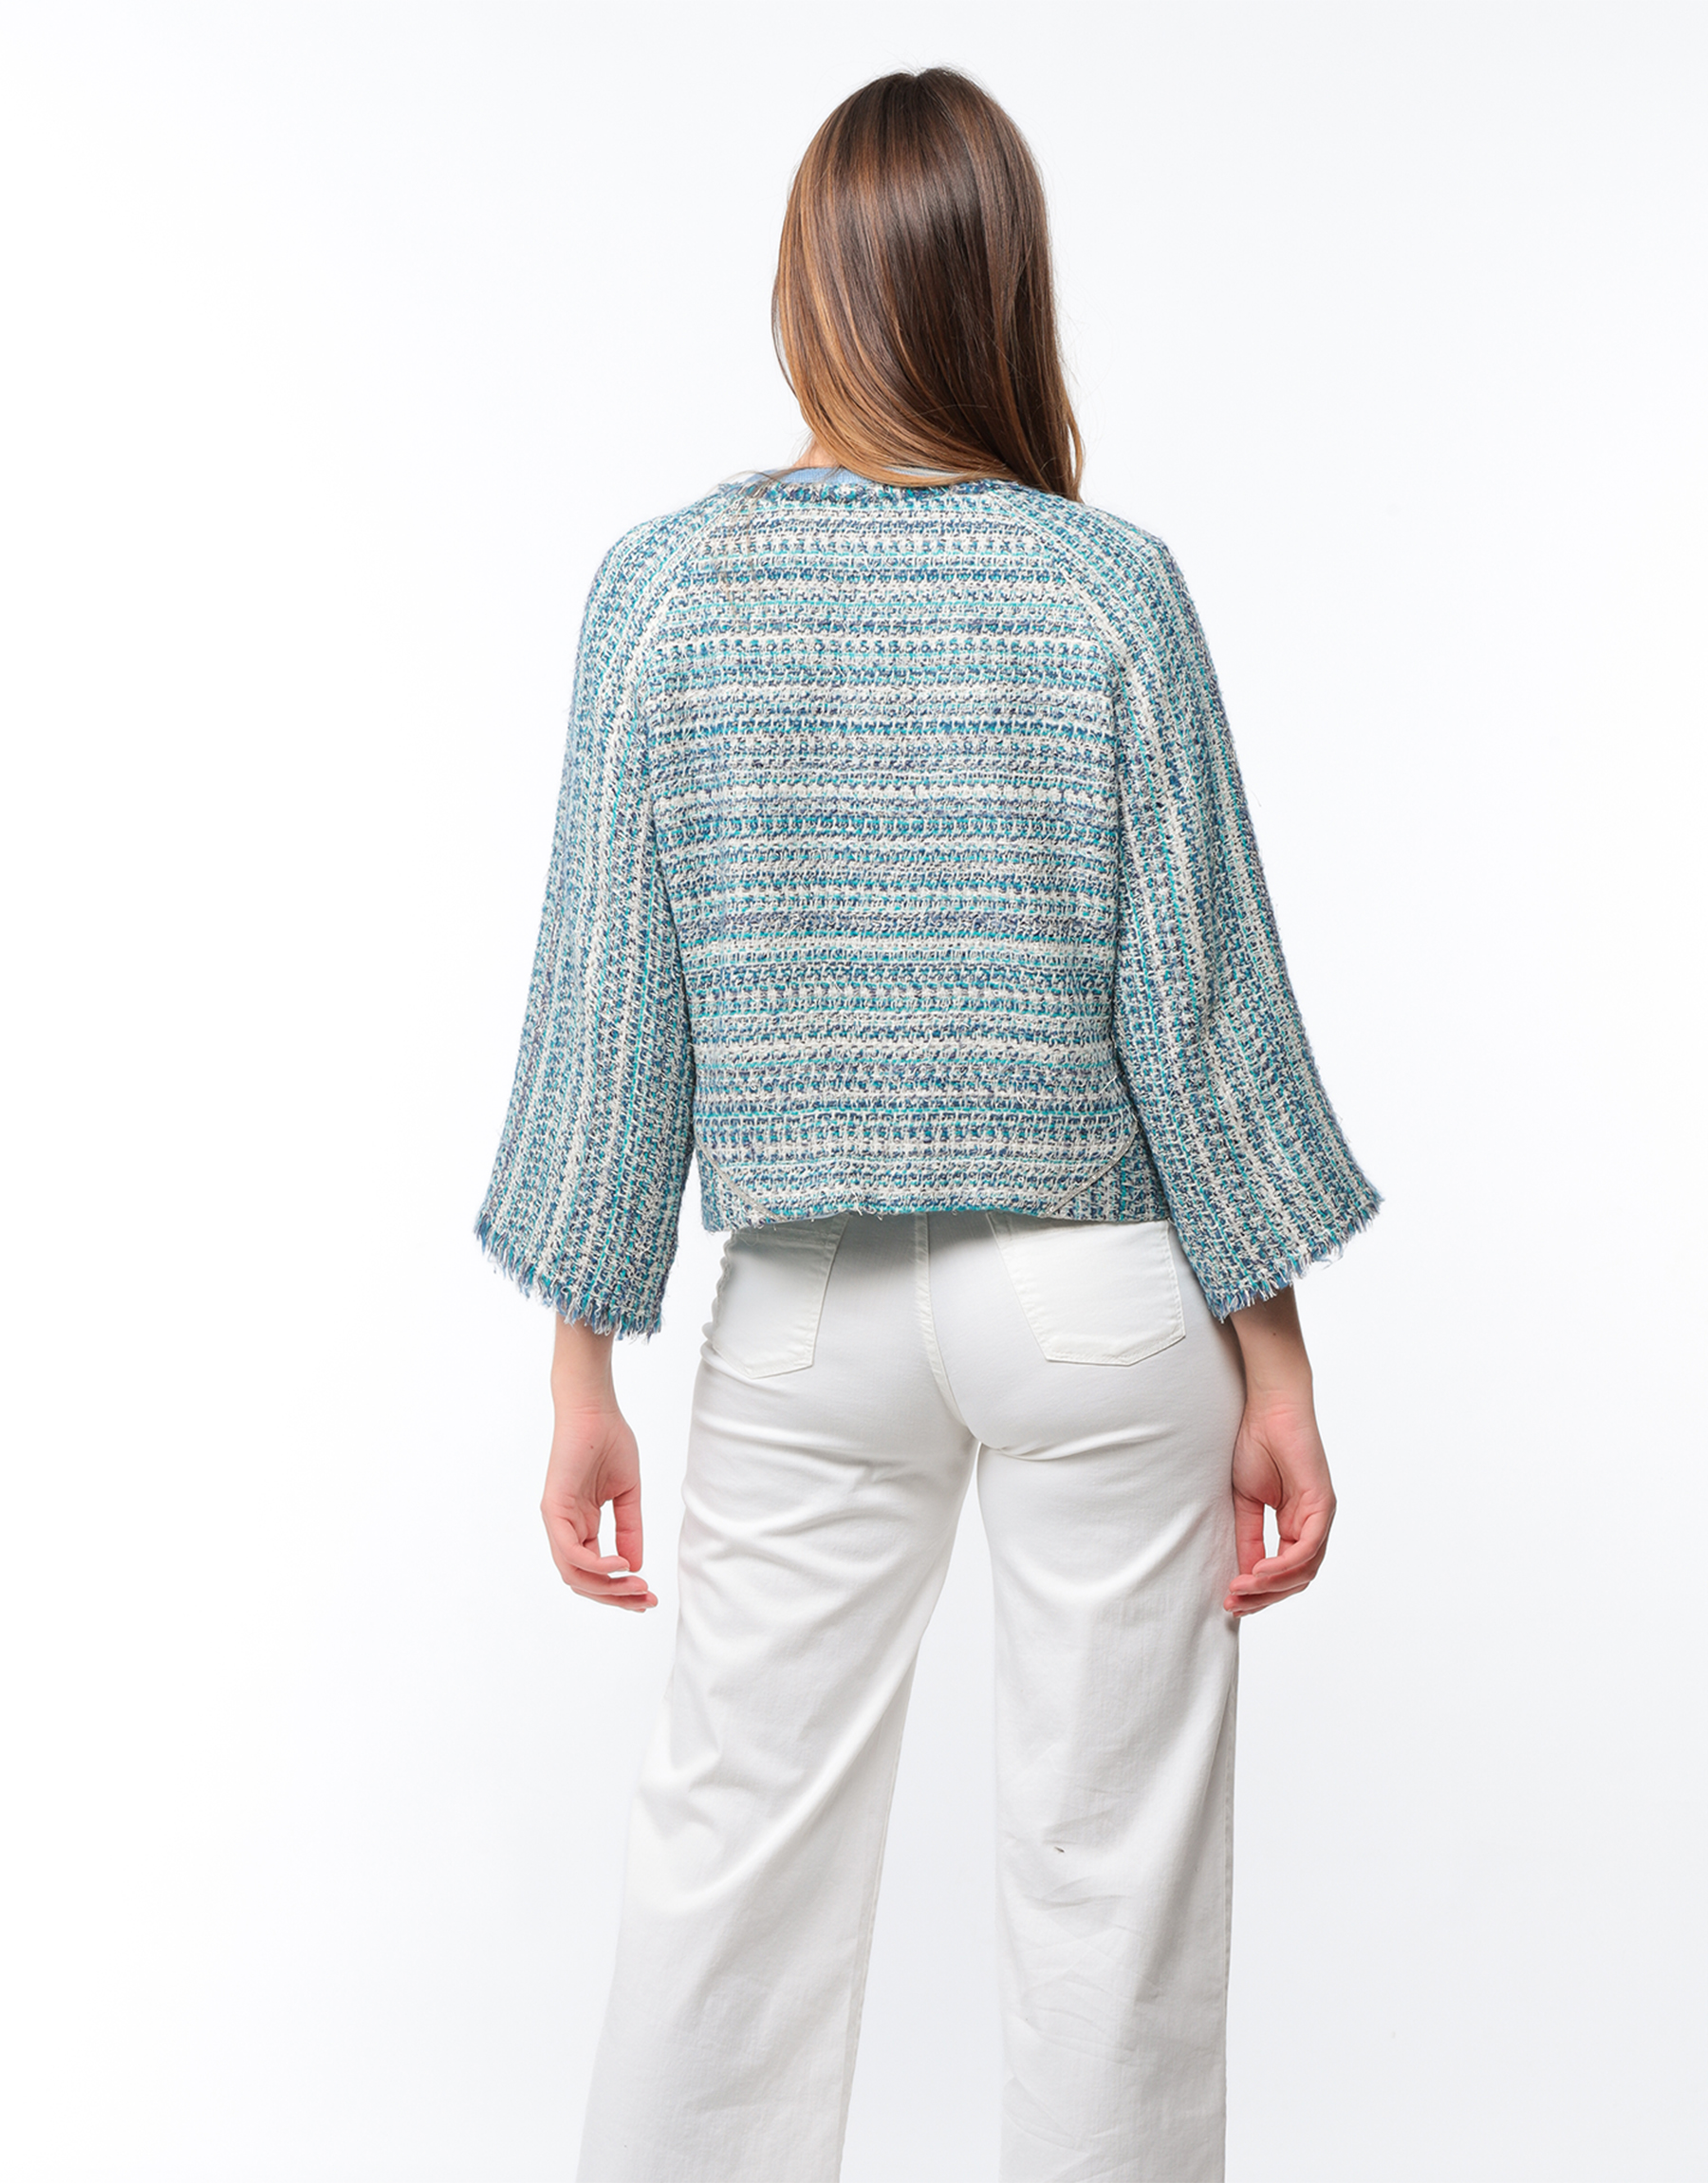 Veste courte droite à découpes en tweed bleu et blanc ou en soie